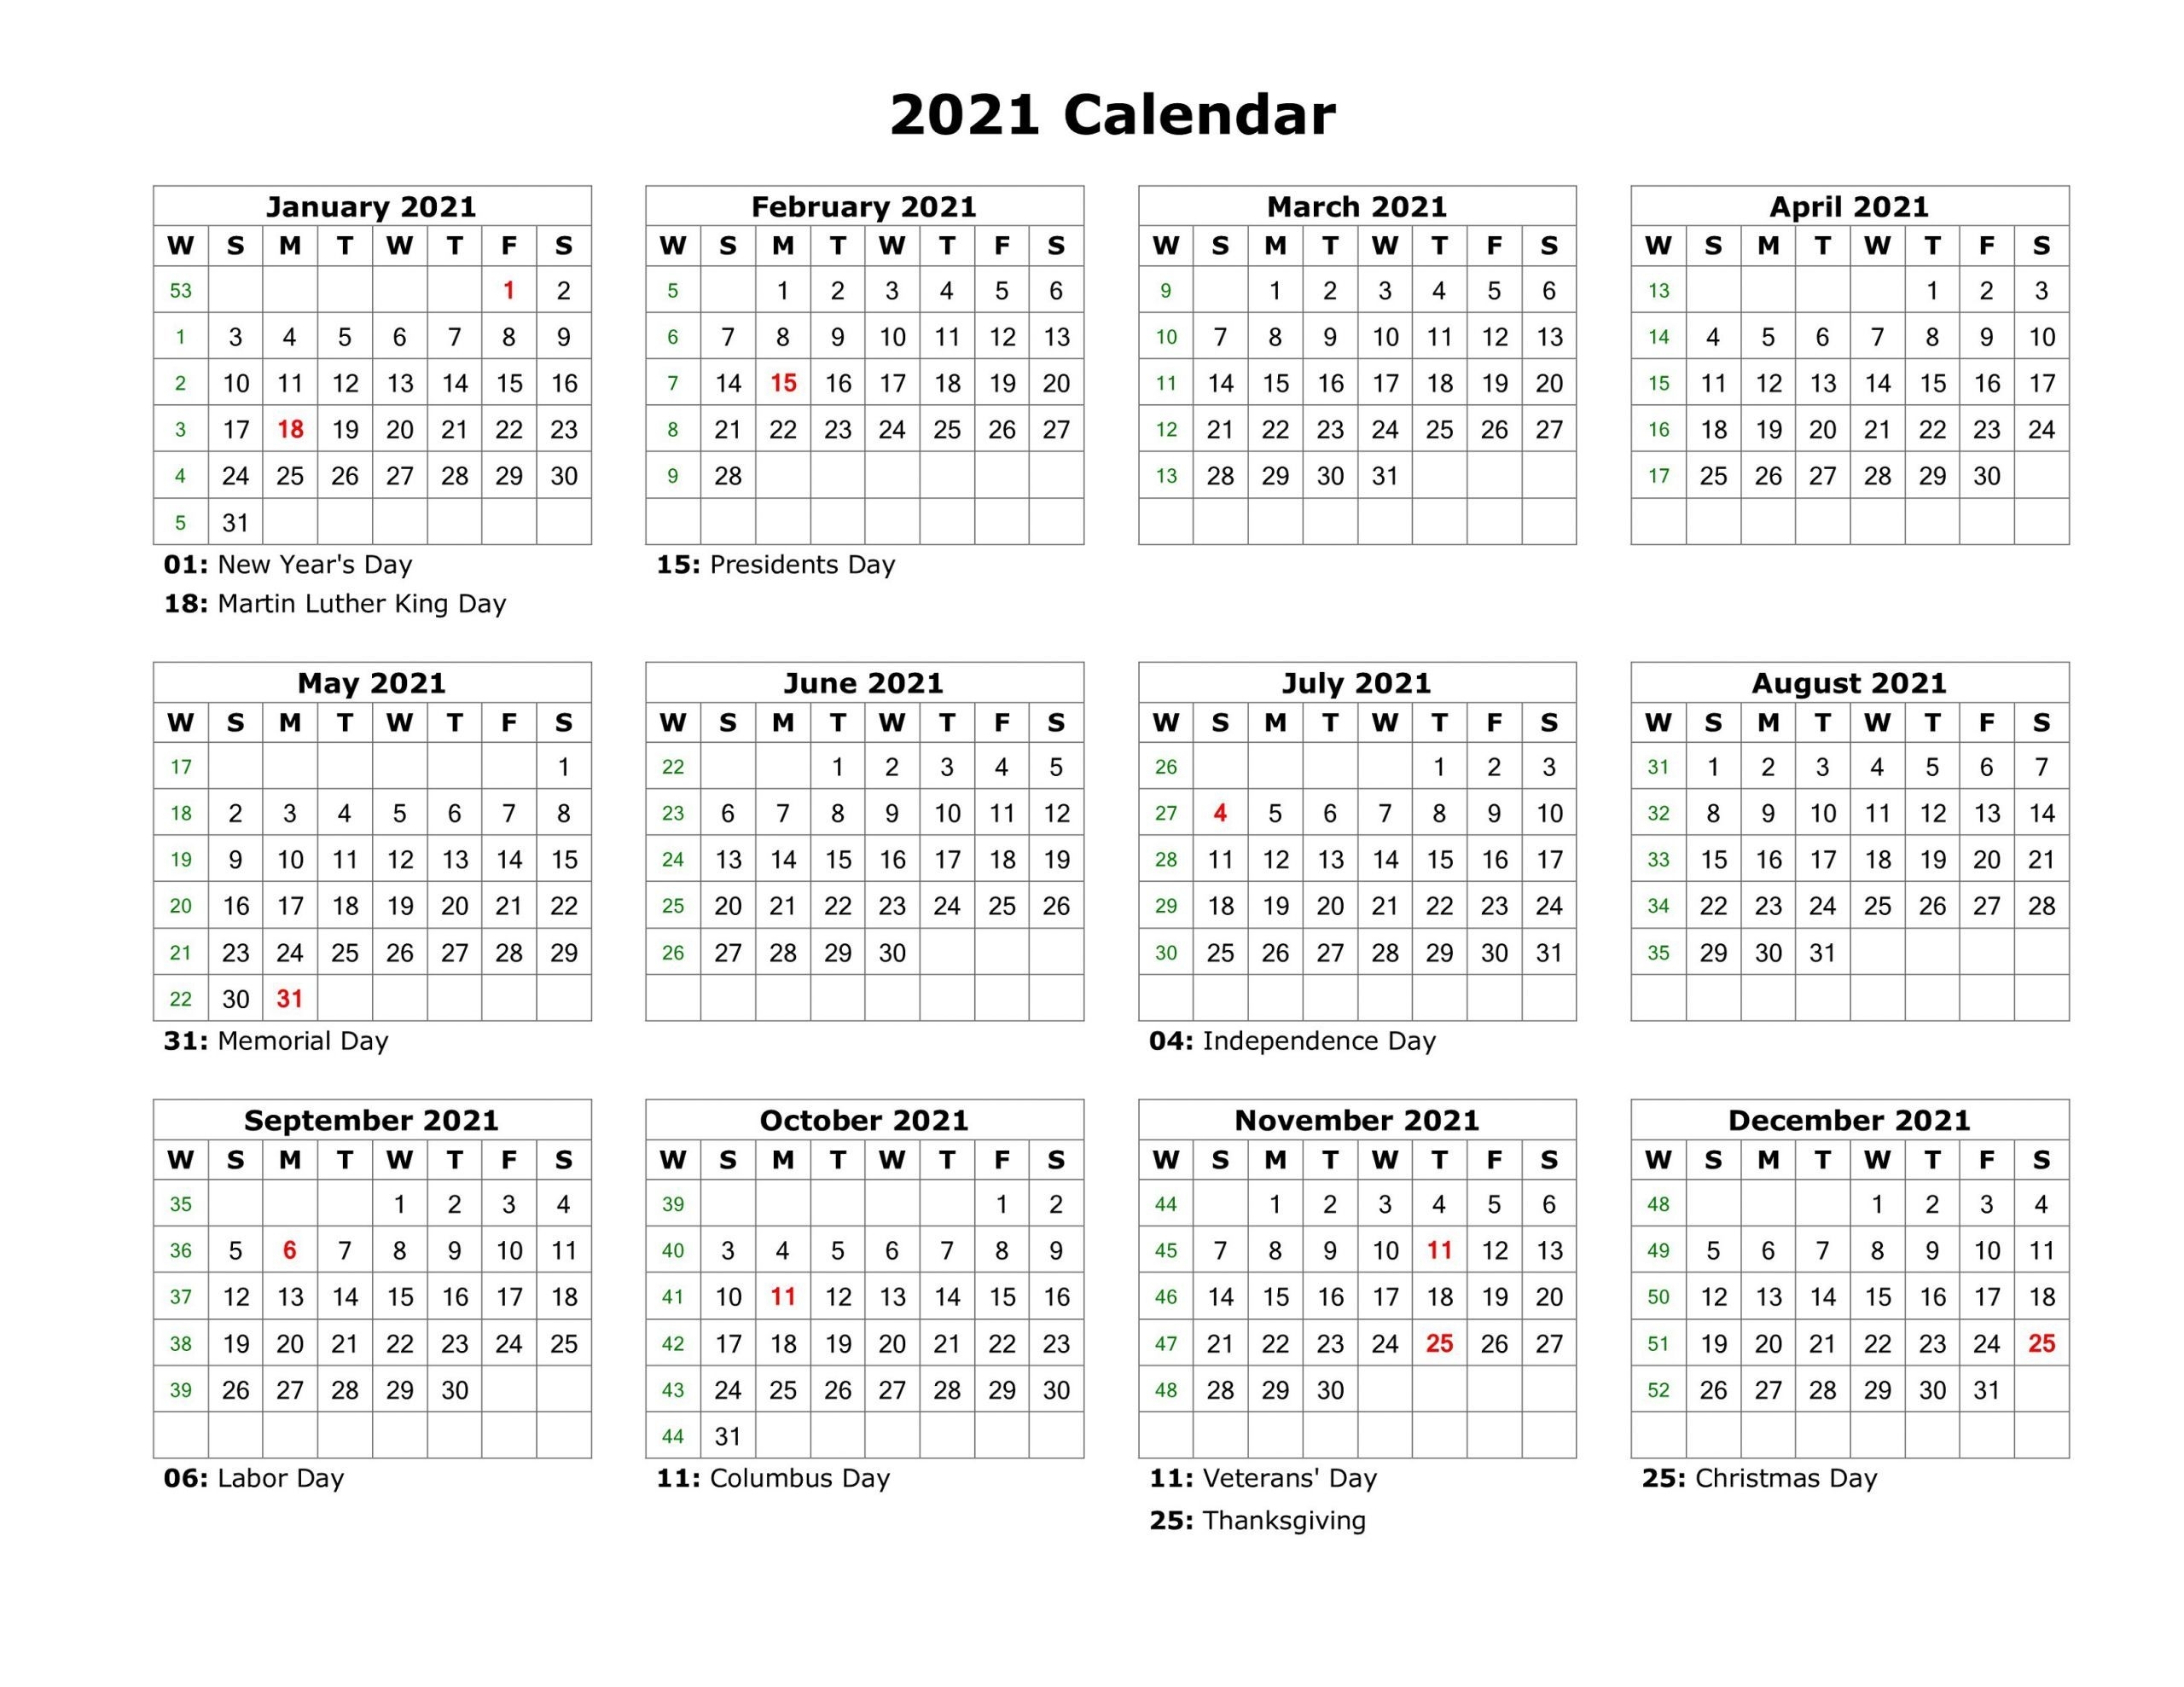 Take 2021 Calendar Print Out